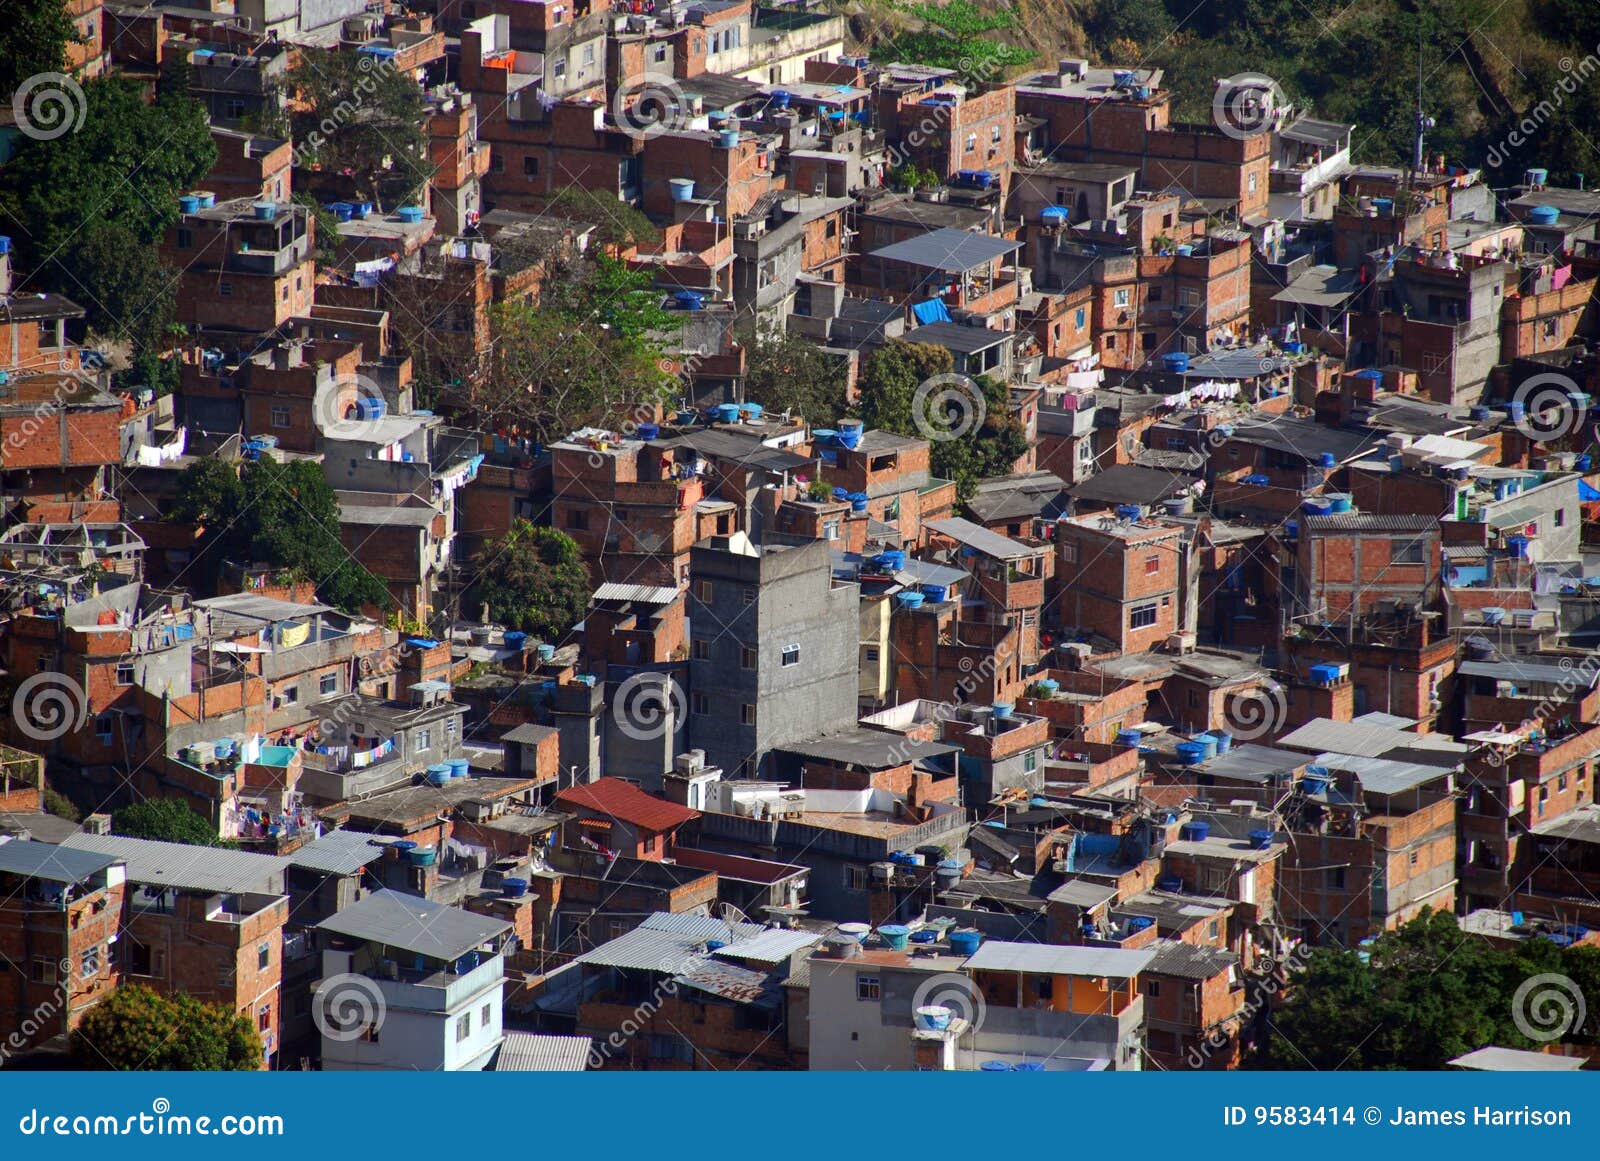 favela